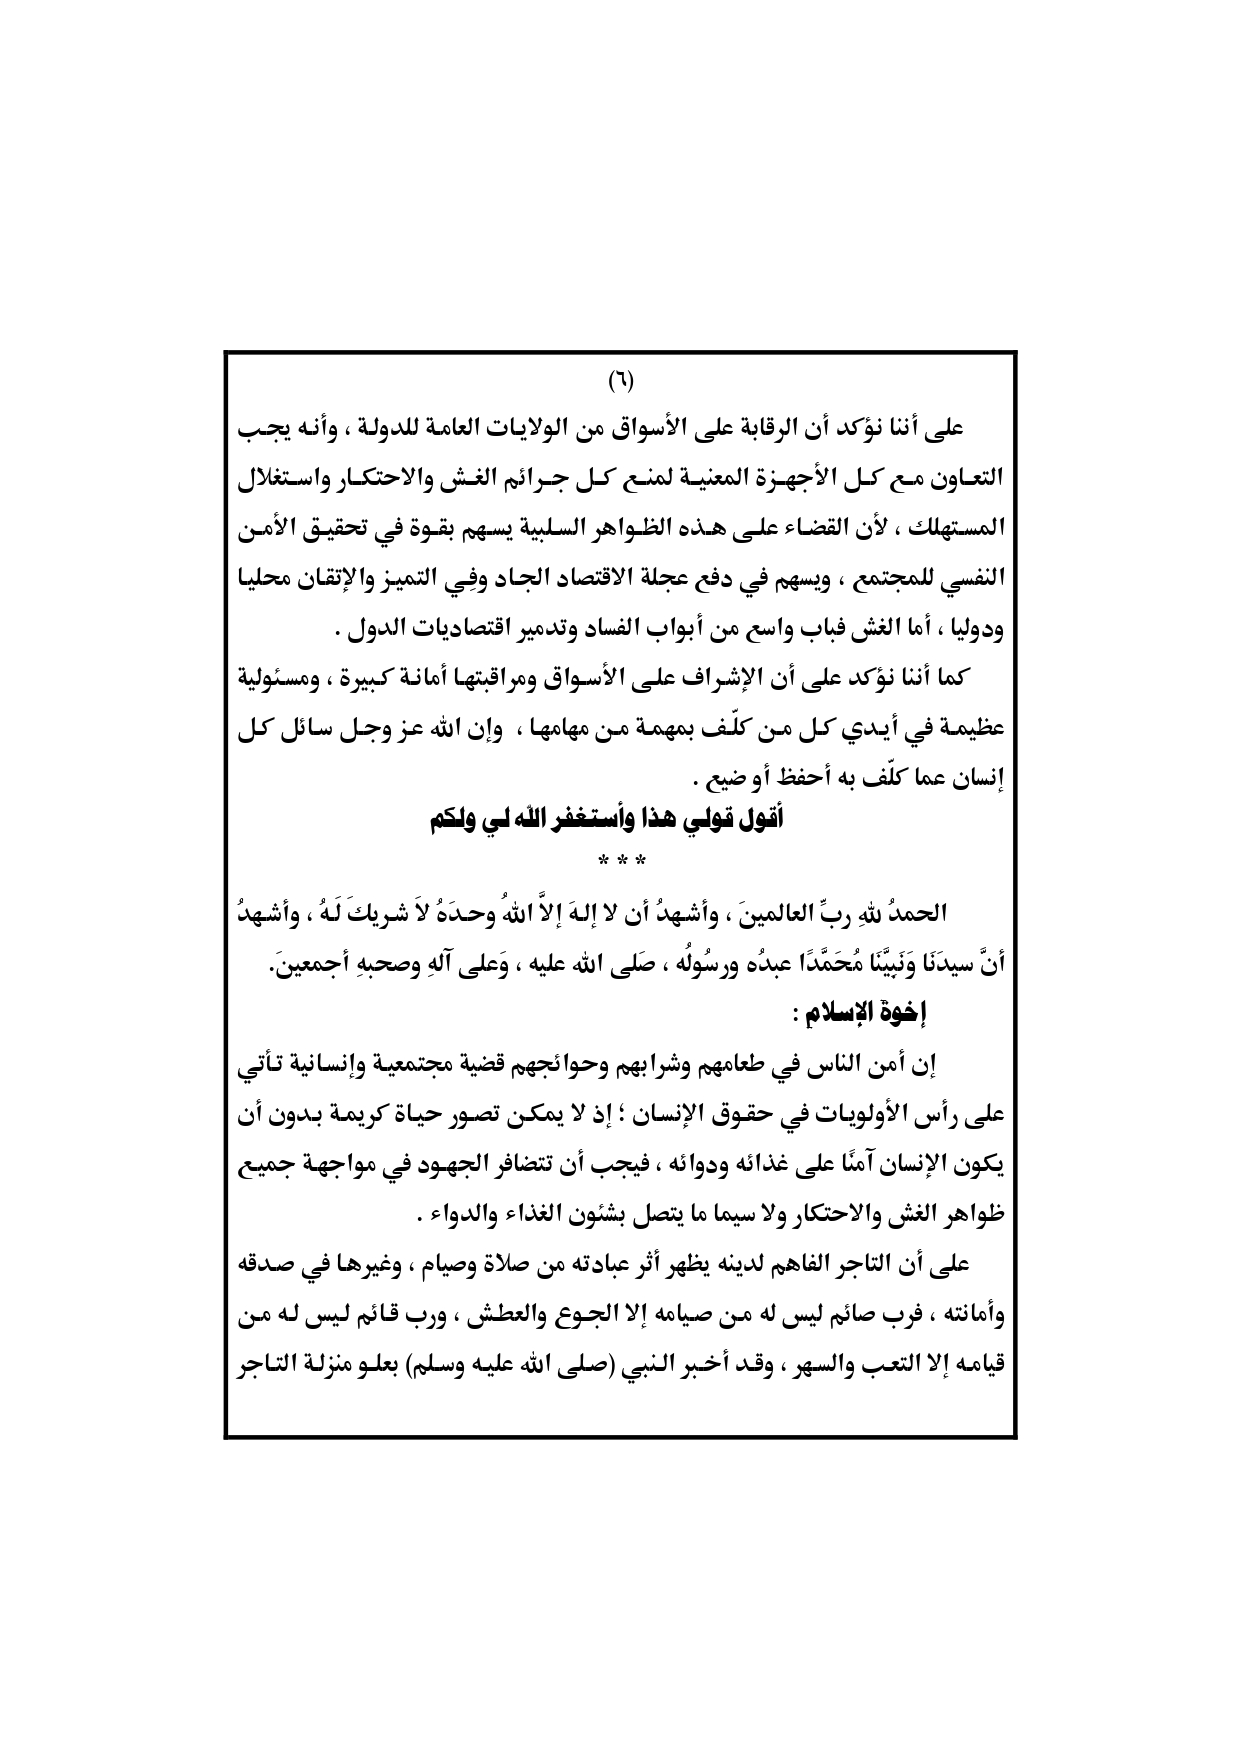 خطبة الجمعة لهذا اليوم ، خطبة وزارة الاوقاف المصرية ، خطبة الجمعة القادمة، خطبة الجمعة القادمة لوزارة الأوقاف المصرية